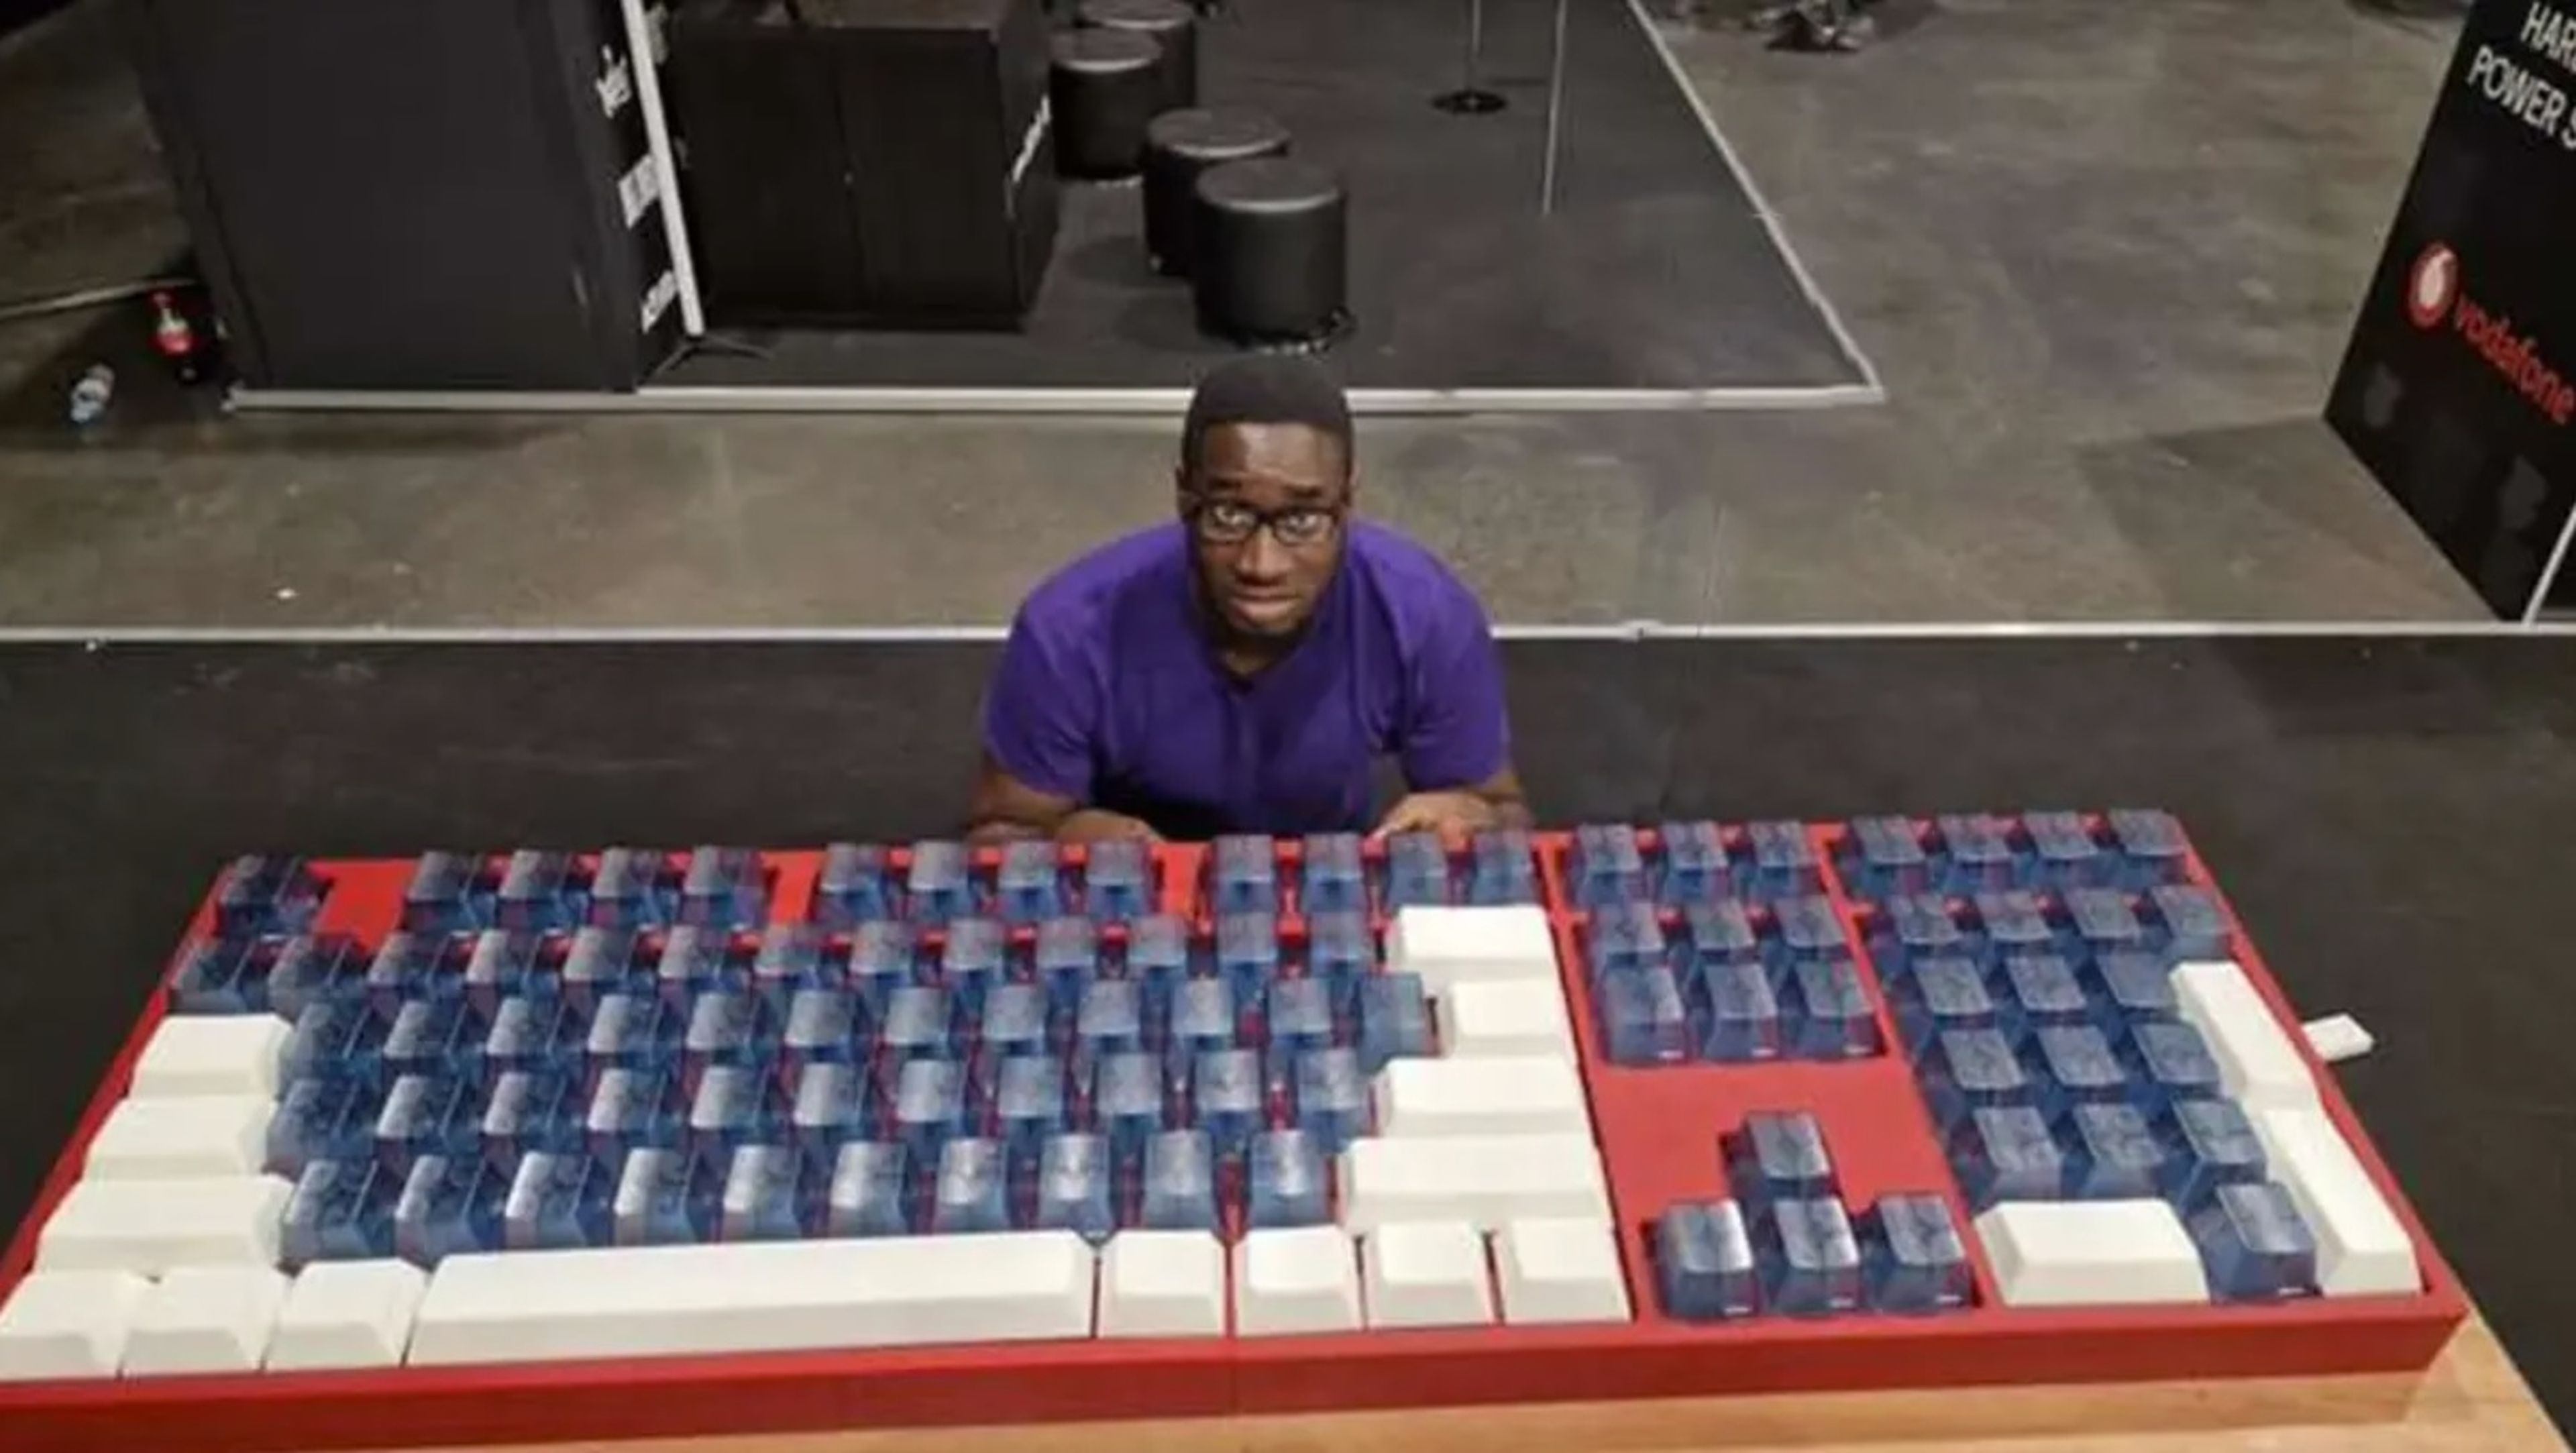 Se gastan 14.000 dólares en fabricar el teclado mecánico más grande jamás creado, con switches de verdad